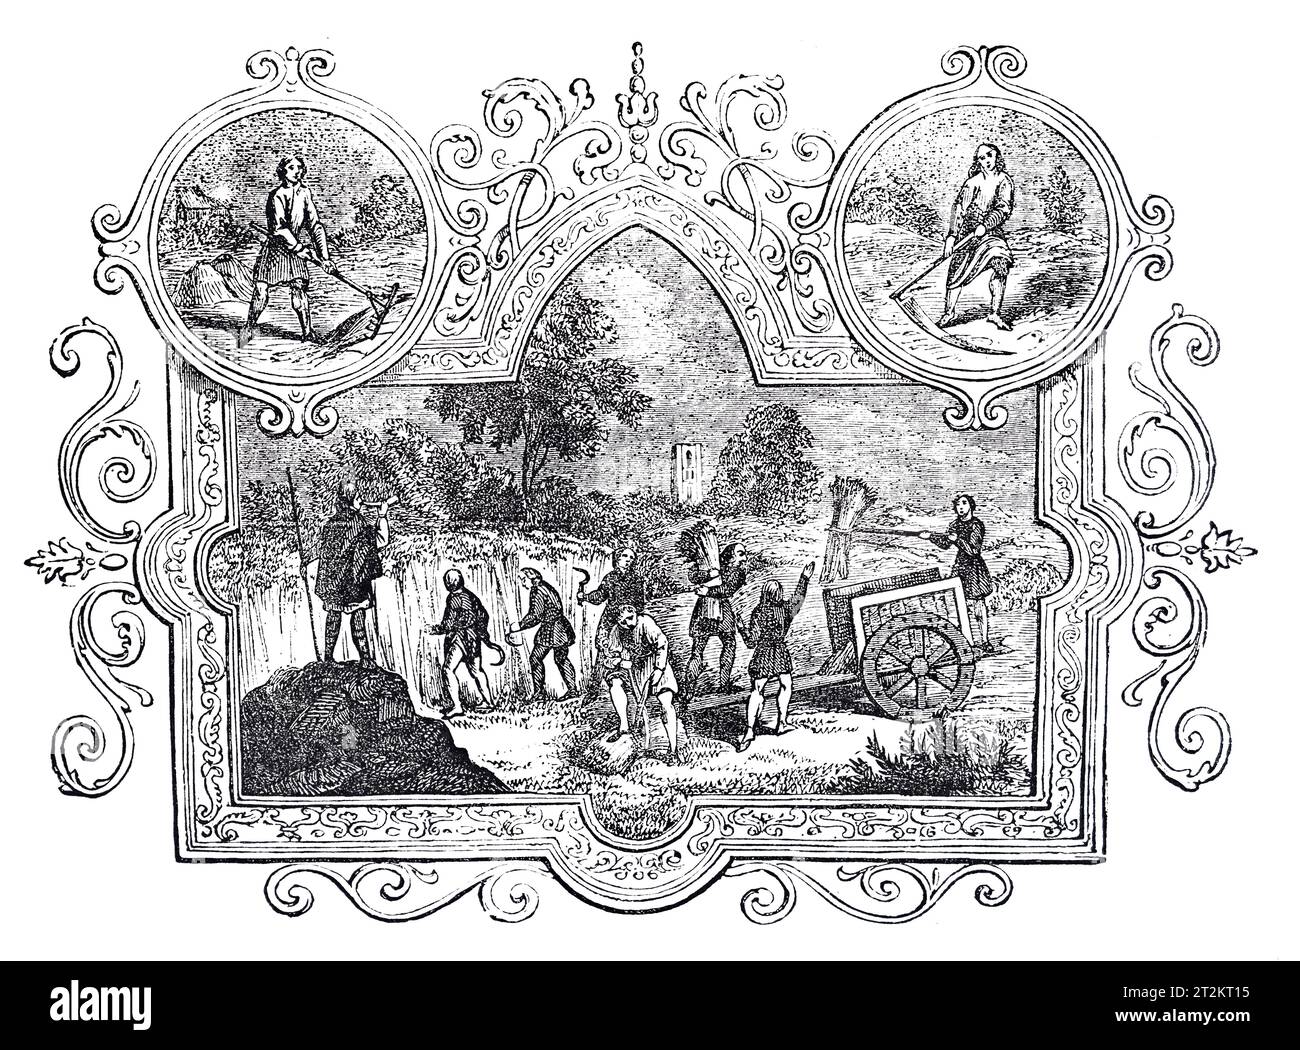 Emblemas sajones del mes de julio. Ilustración en blanco y negro de la 'Vieja Inglaterra' publicada por James Sangster en 1860. Foto de stock